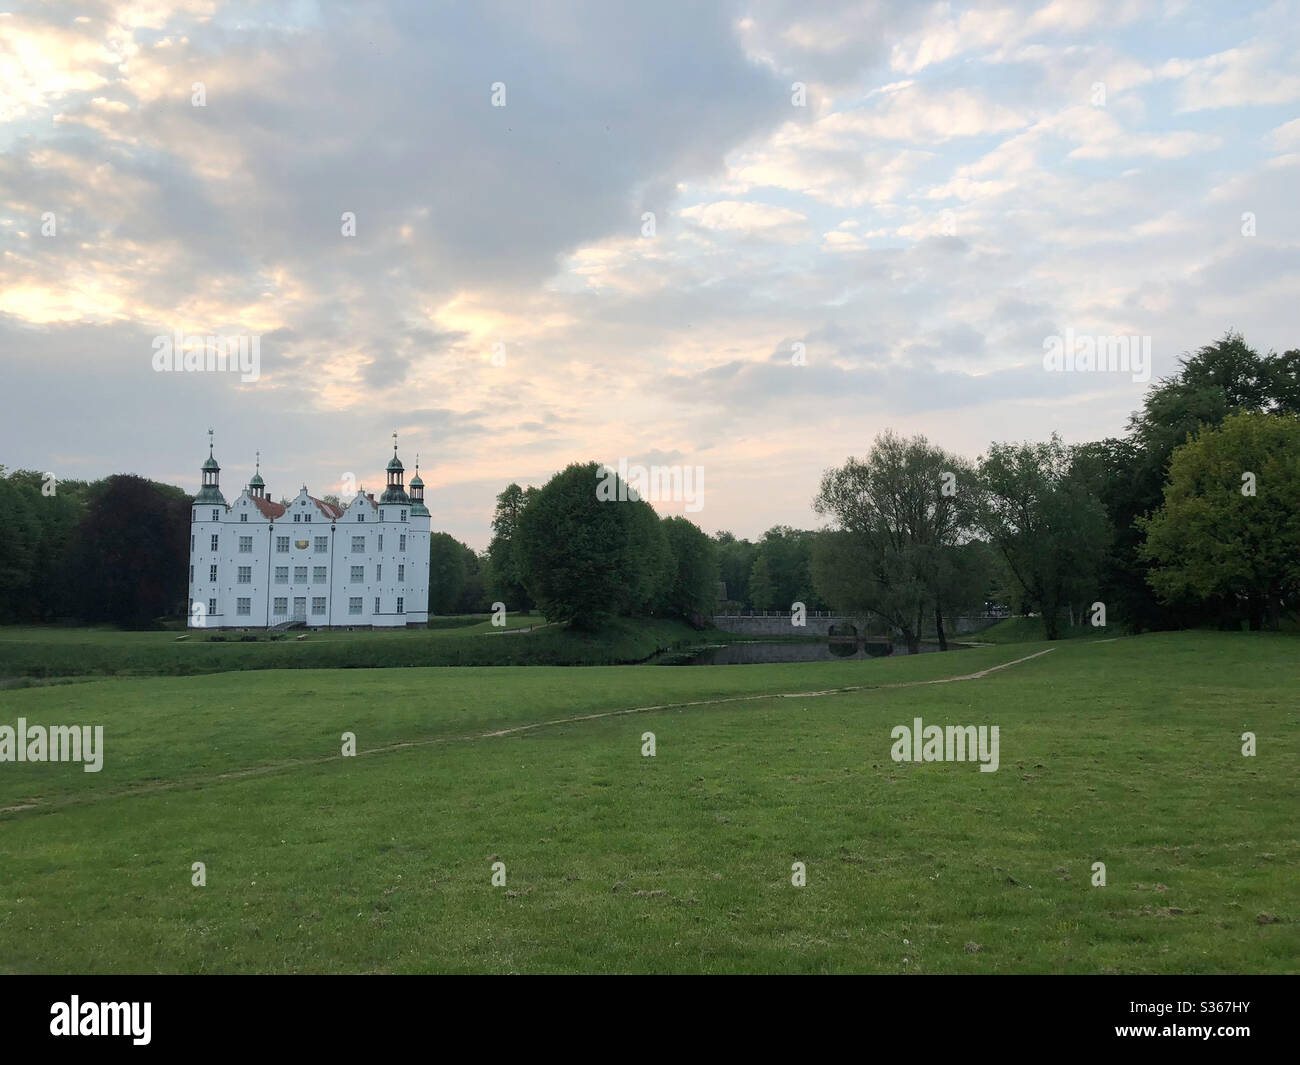 Panorama Aufnahme von einem Park mit dem Schloss Ahrensburg im Hintergrund Stock Photo